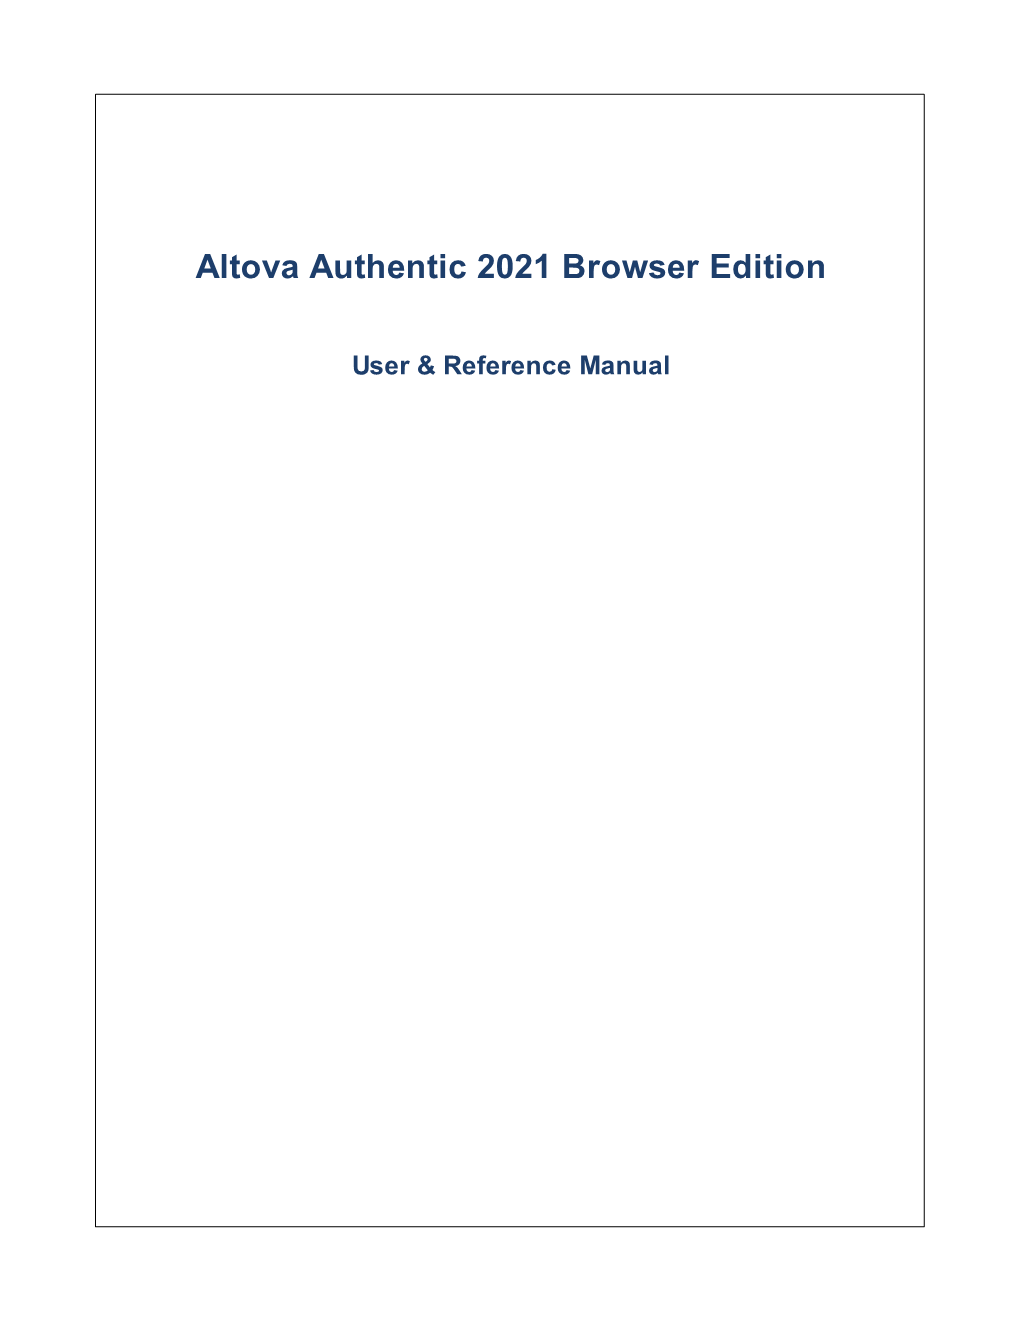 Altova Authentic 2021 Browser Edition